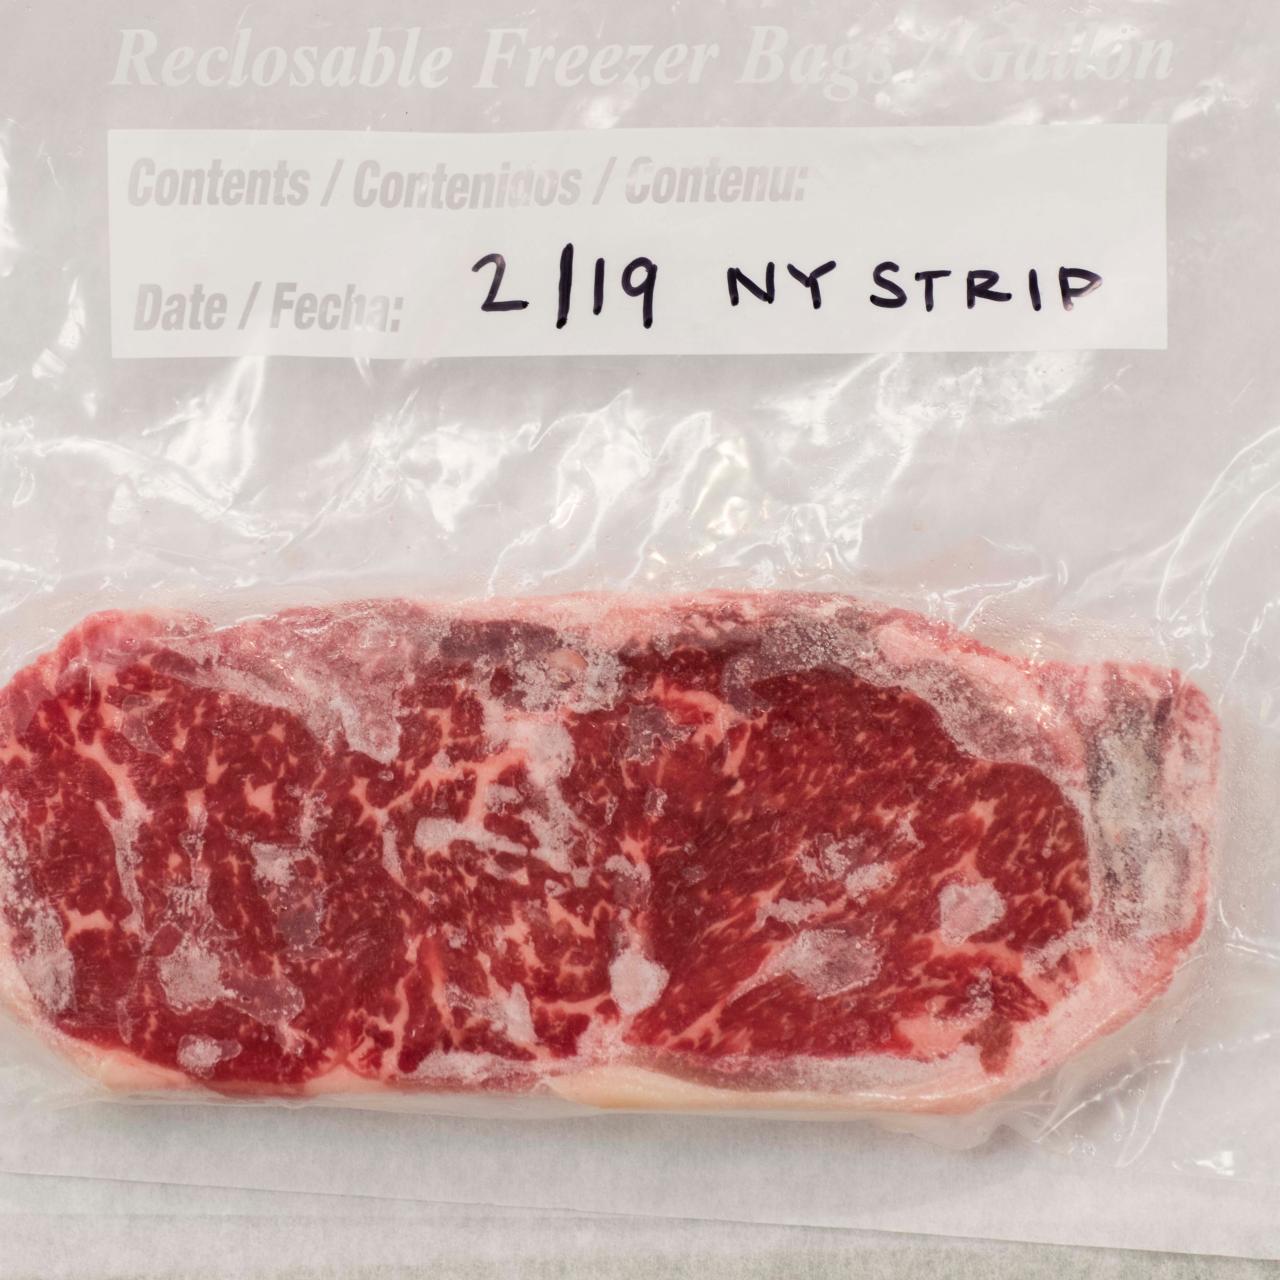 https://food.fnr.sndimg.com/content/dam/images/food/fullset/2019/2/11/KC2002_frozen_steak.jpg.rend.hgtvcom.1280.1280.suffix/1549990402217.jpeg